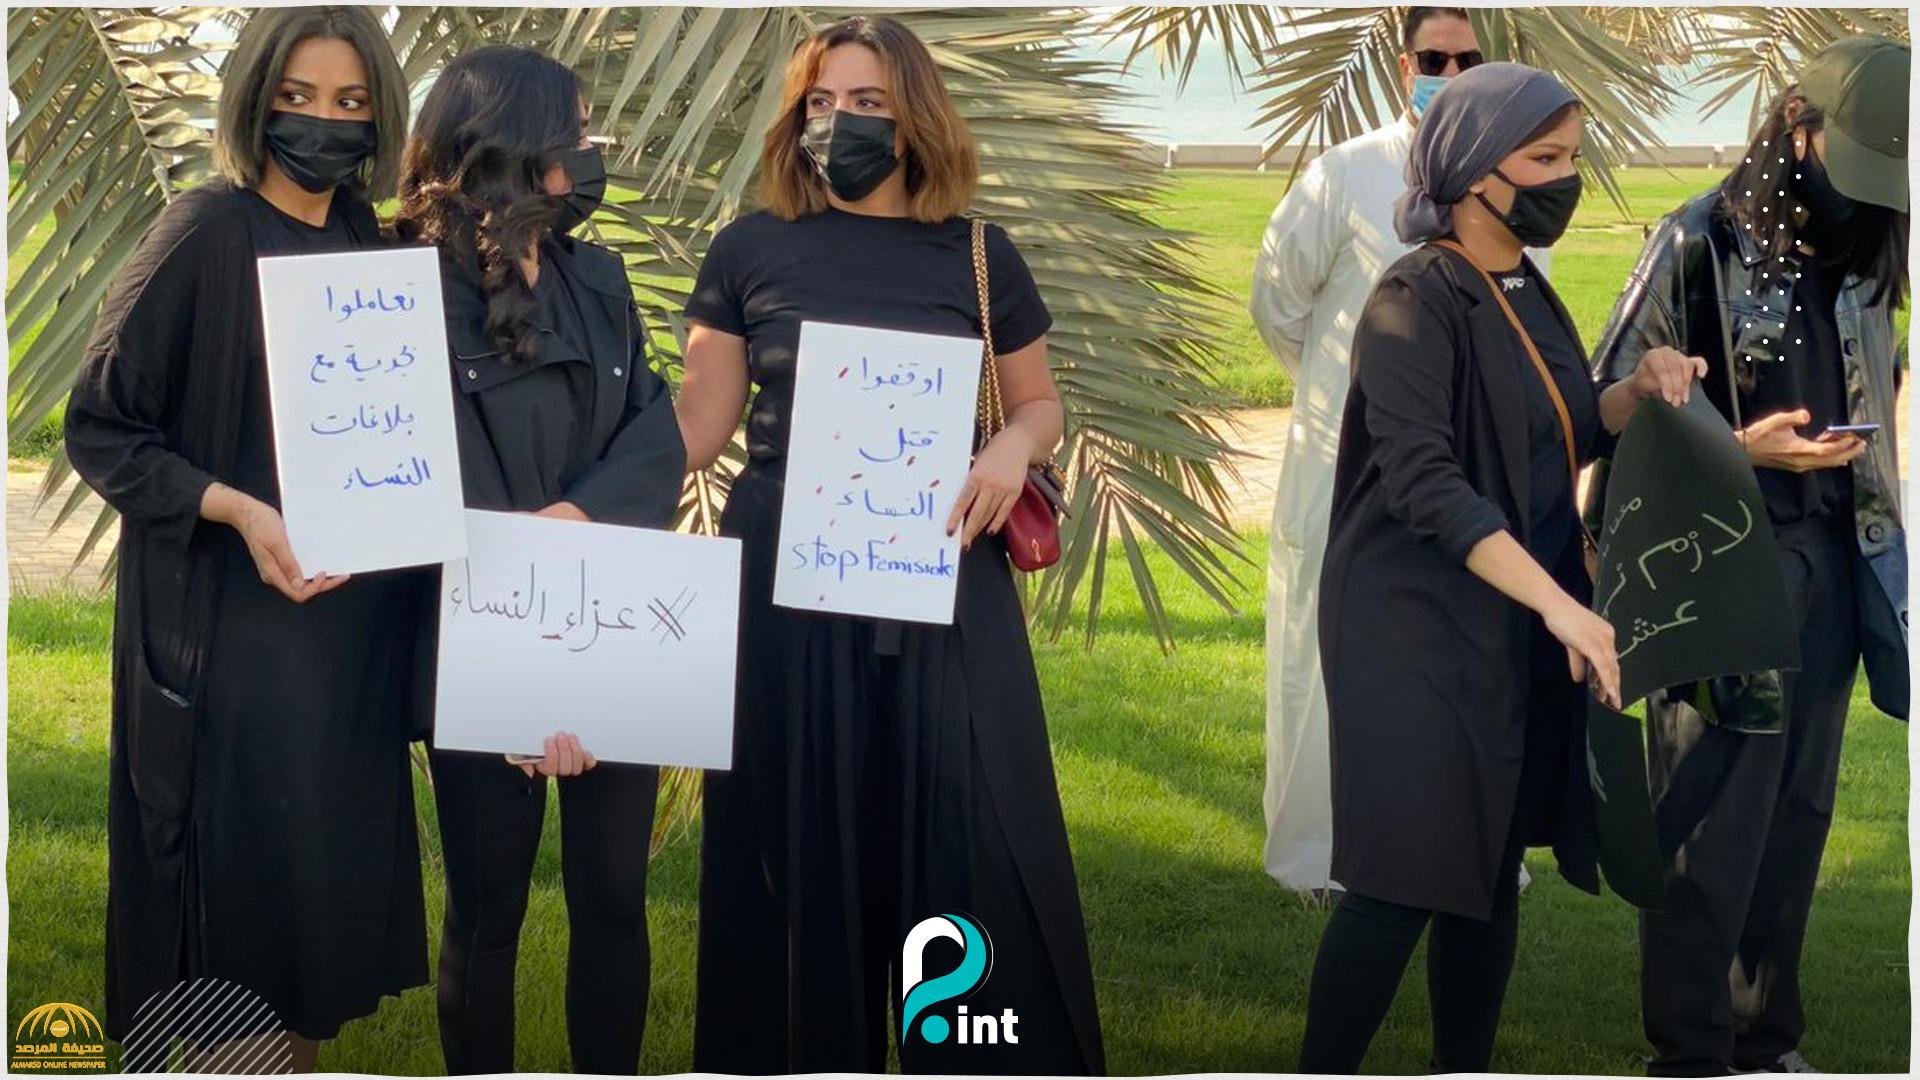 شاهد.. وقفة احتجاجية نسائية في الكويت تنديدًا بجريمة "صباح السالم": "أوقفوا قتل النساء"